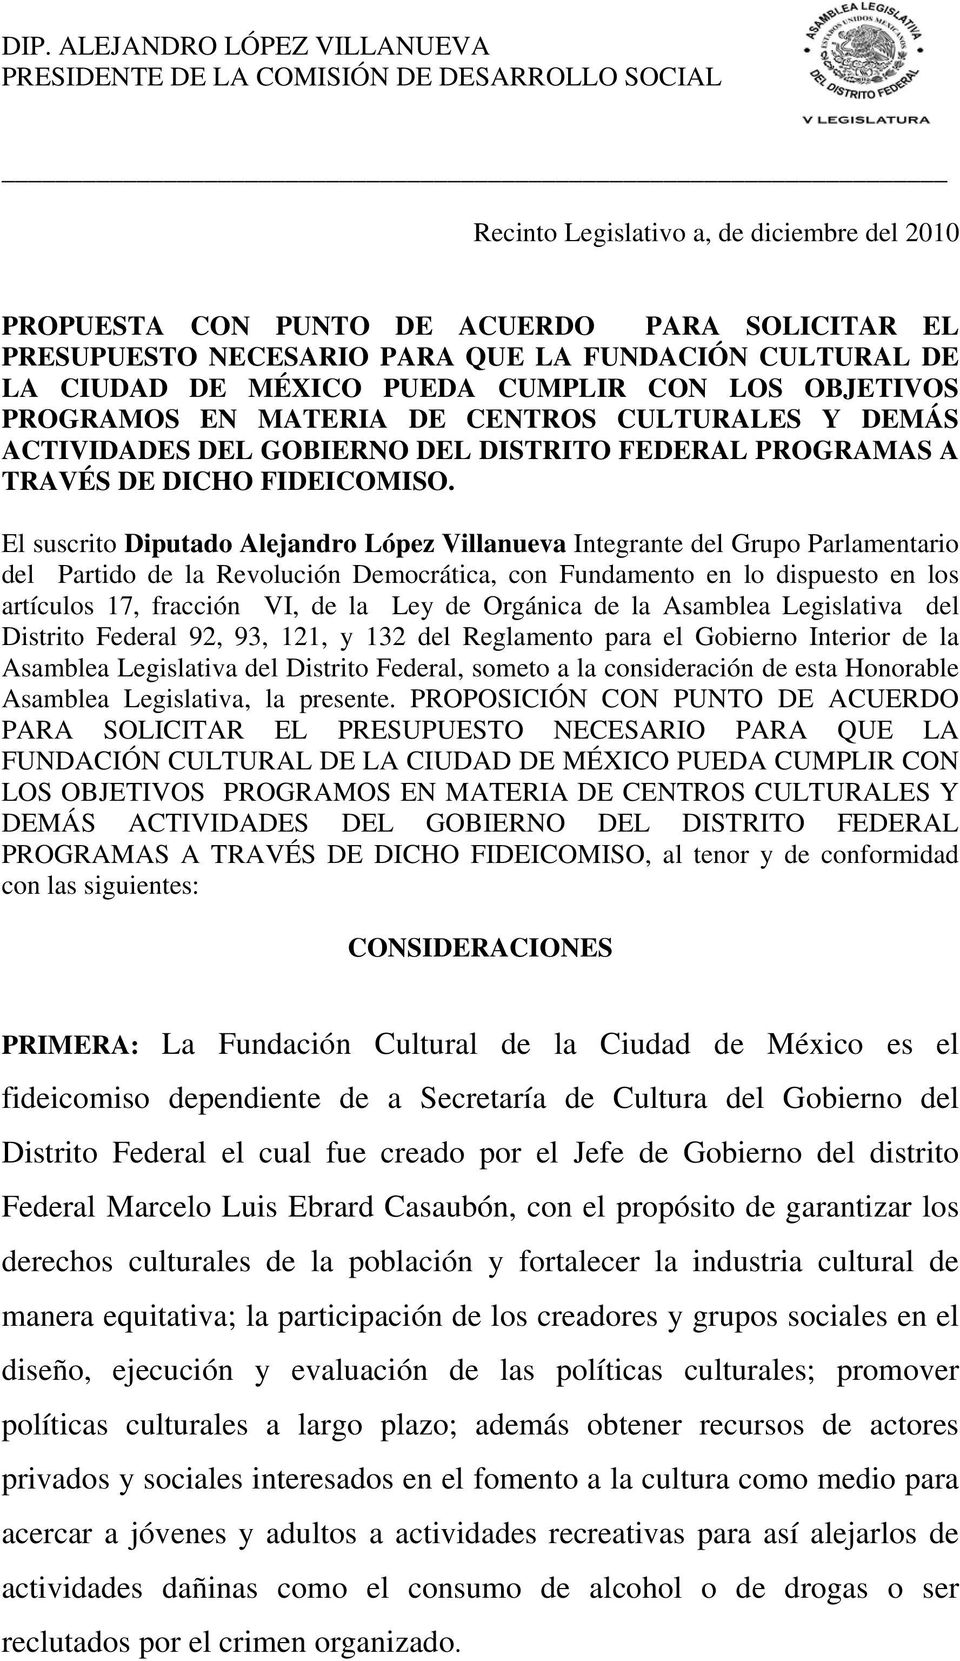 El suscrito Diputado Alejandro López Villanueva Integrante del Grupo Parlamentario del Partido de la Revolución Democrática, con Fundamento en lo dispuesto en los artículos 17, fracción VI, de la Ley